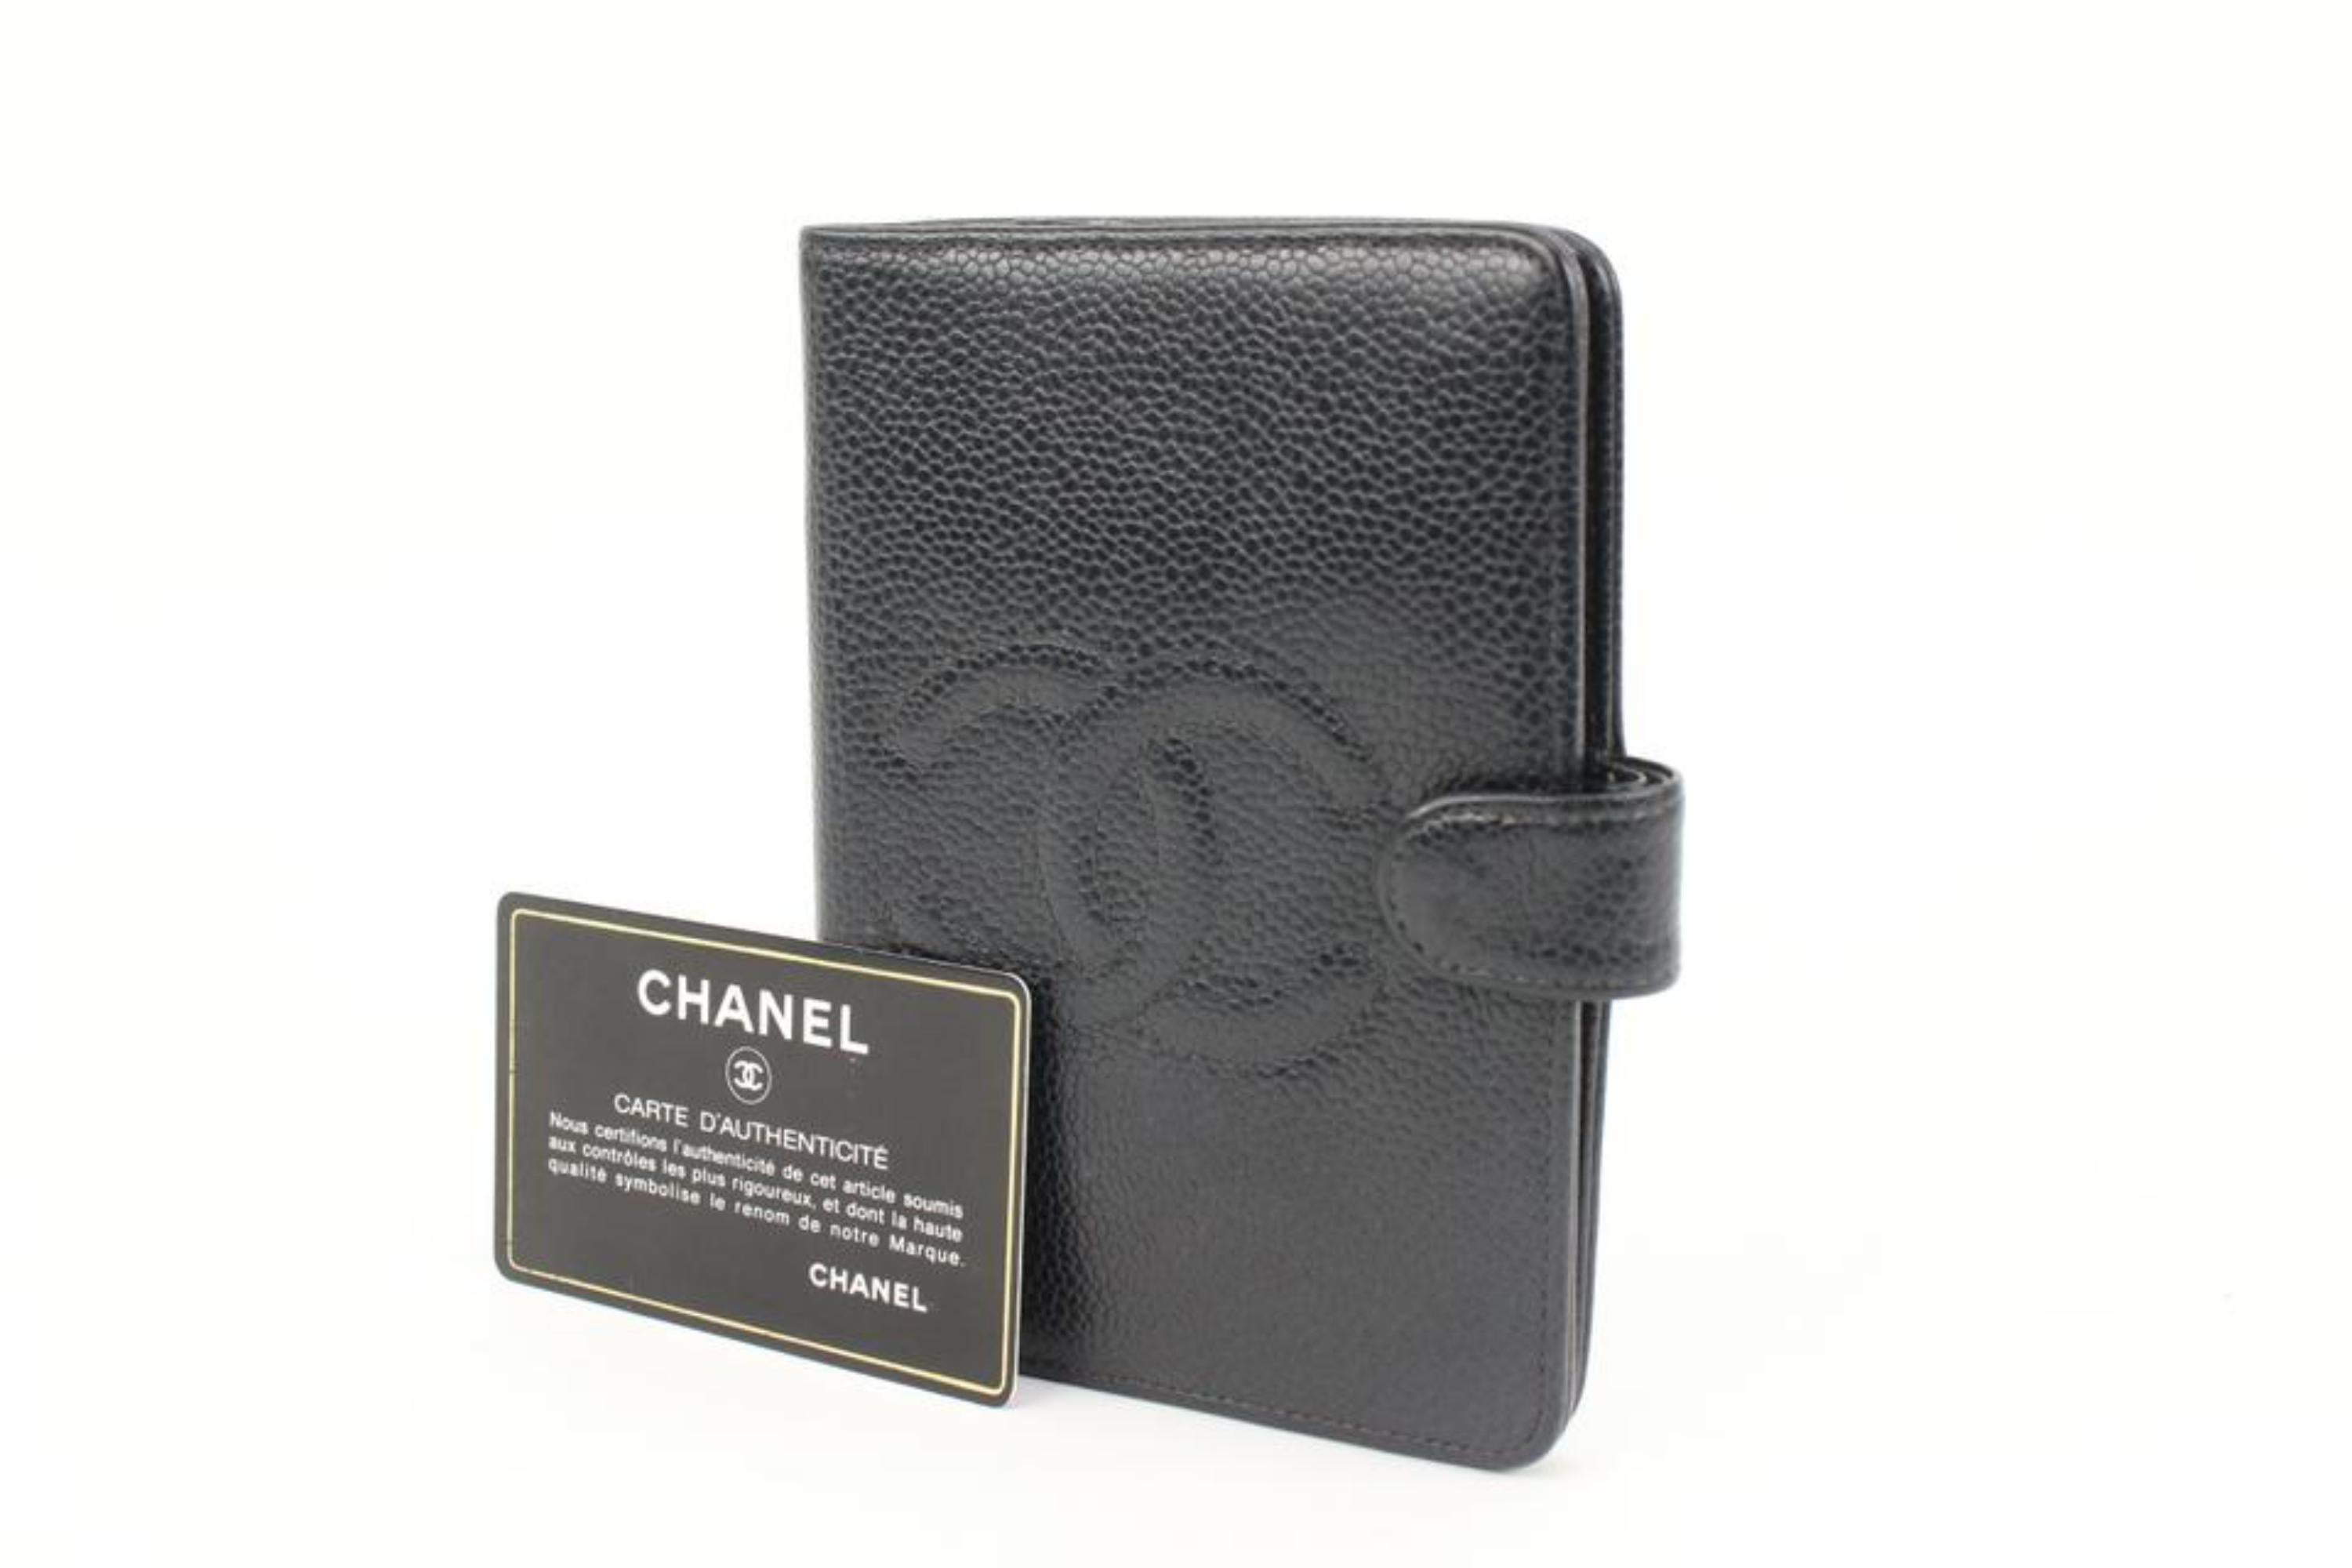 Chanel Black Caviar Leather Agenda Cover 98cz412s 8